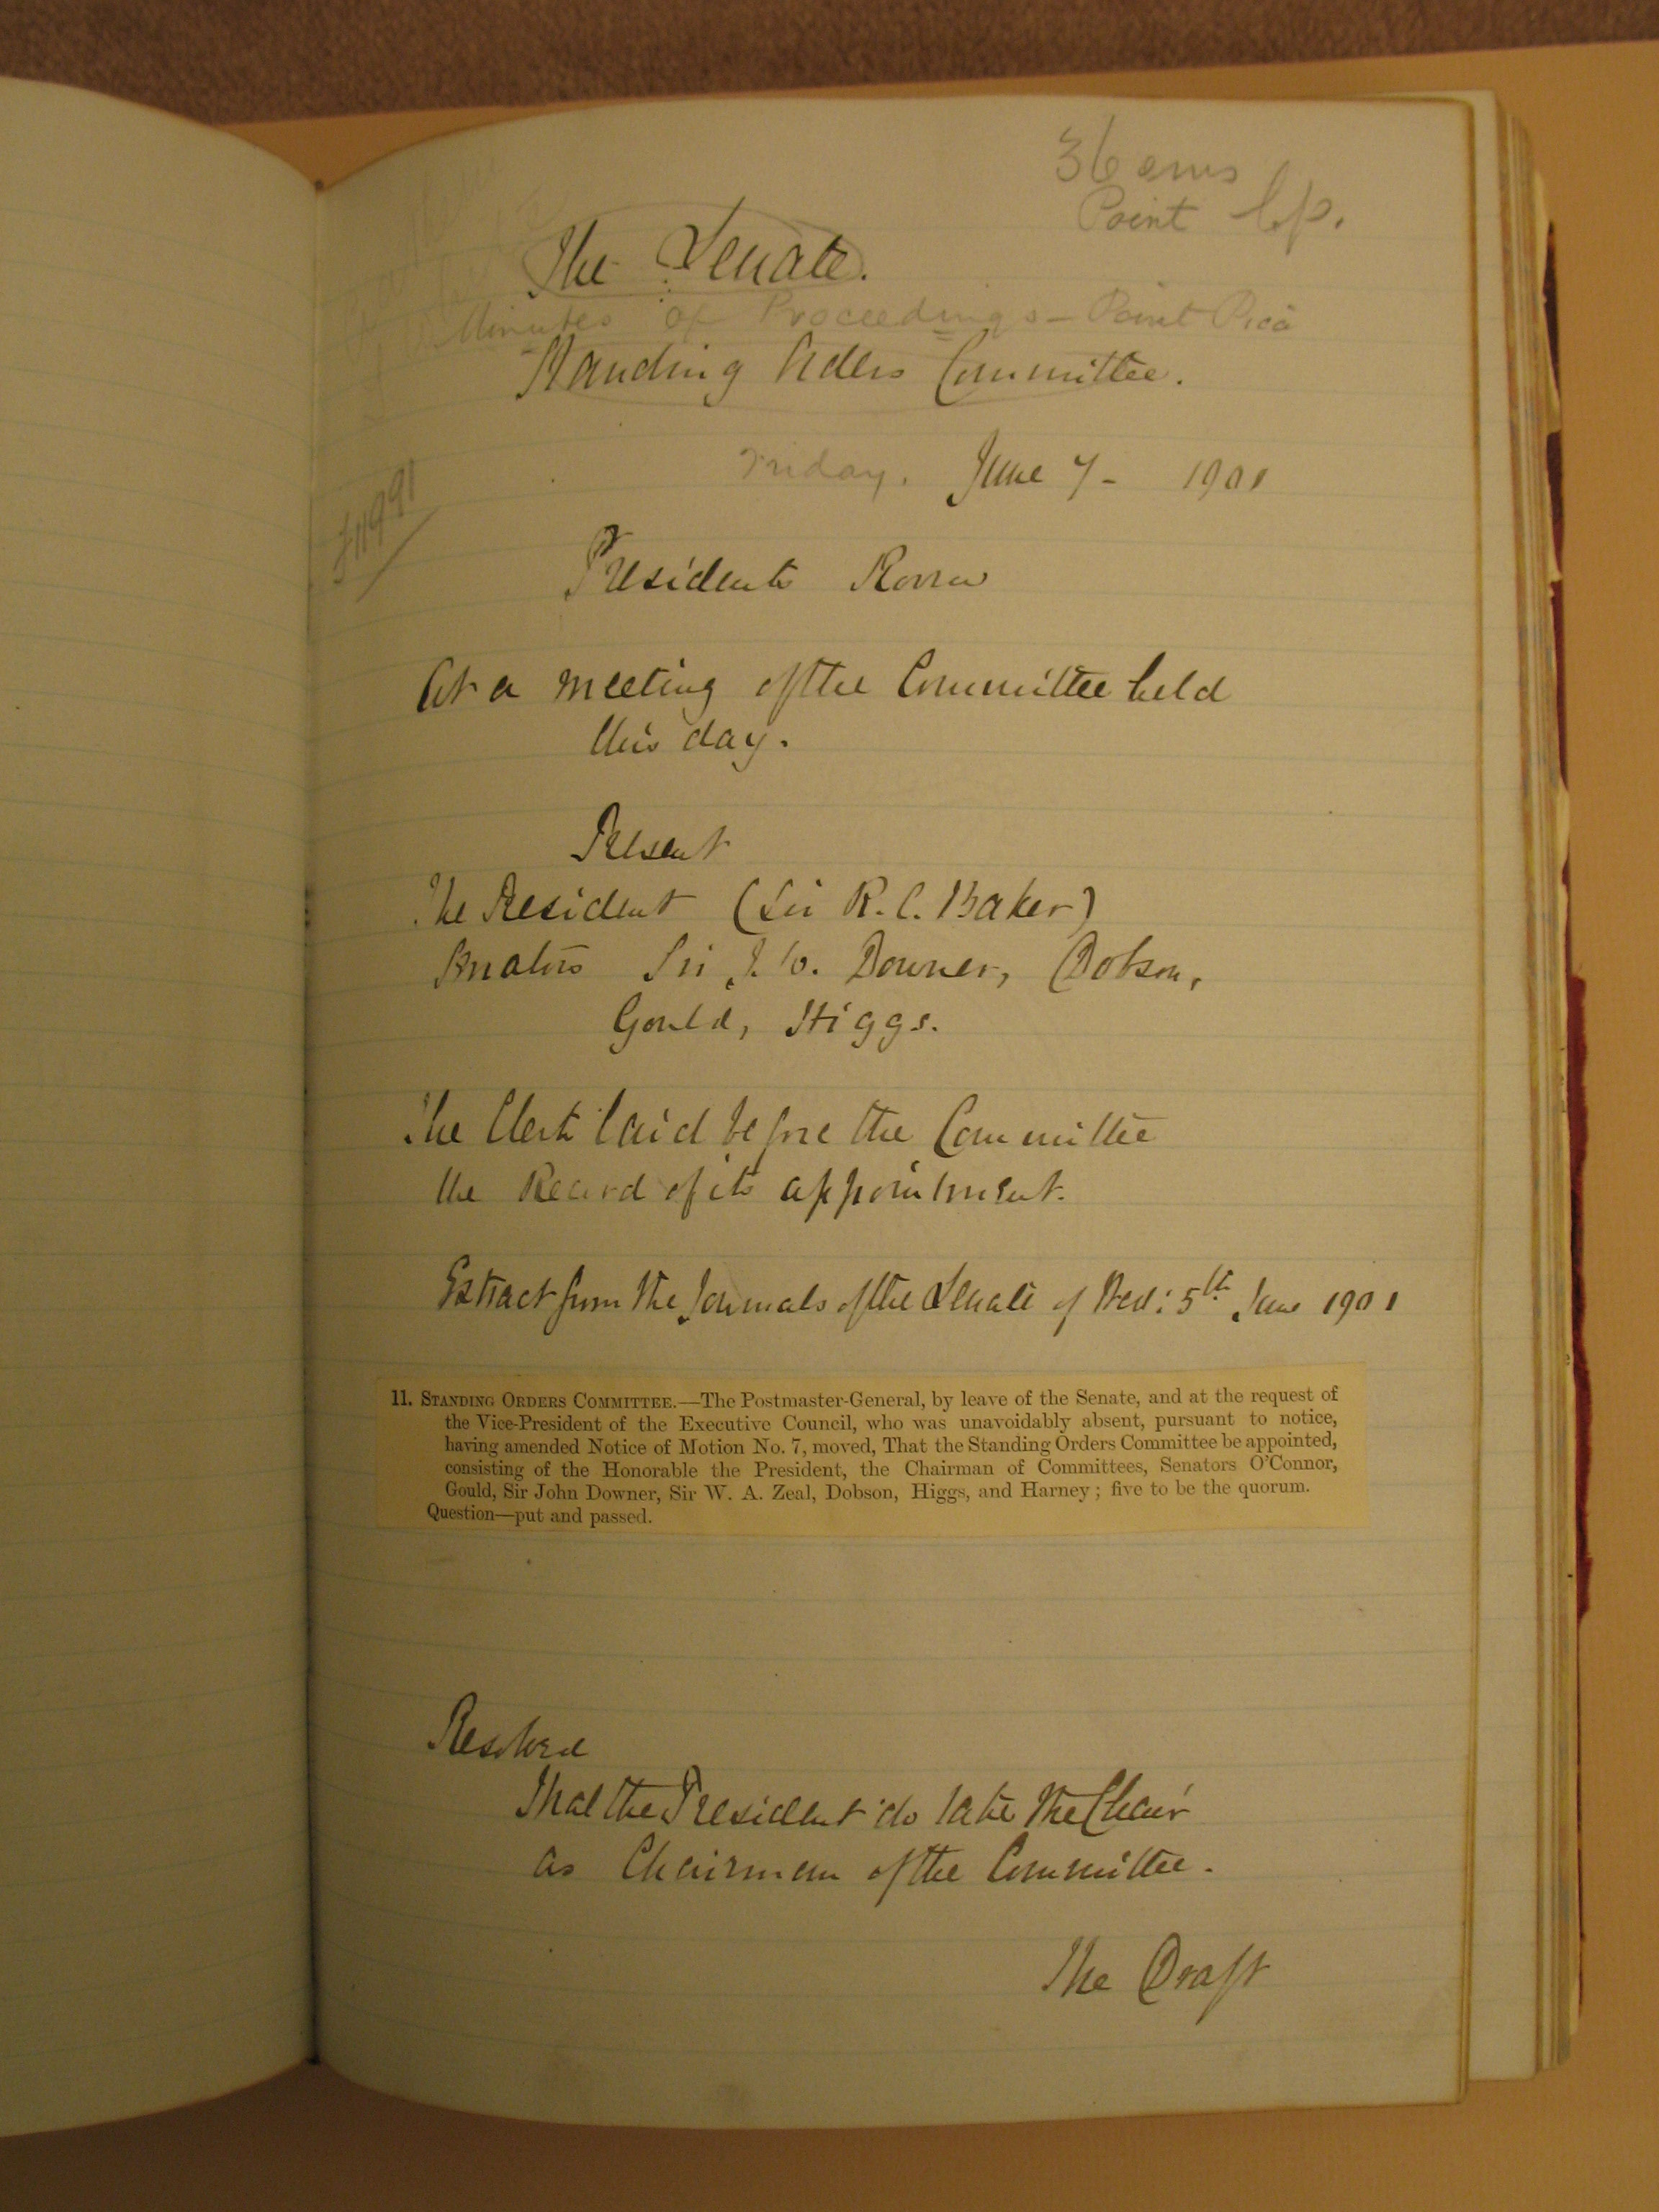 Standing Orders Committee minutes, 7 June 1901.